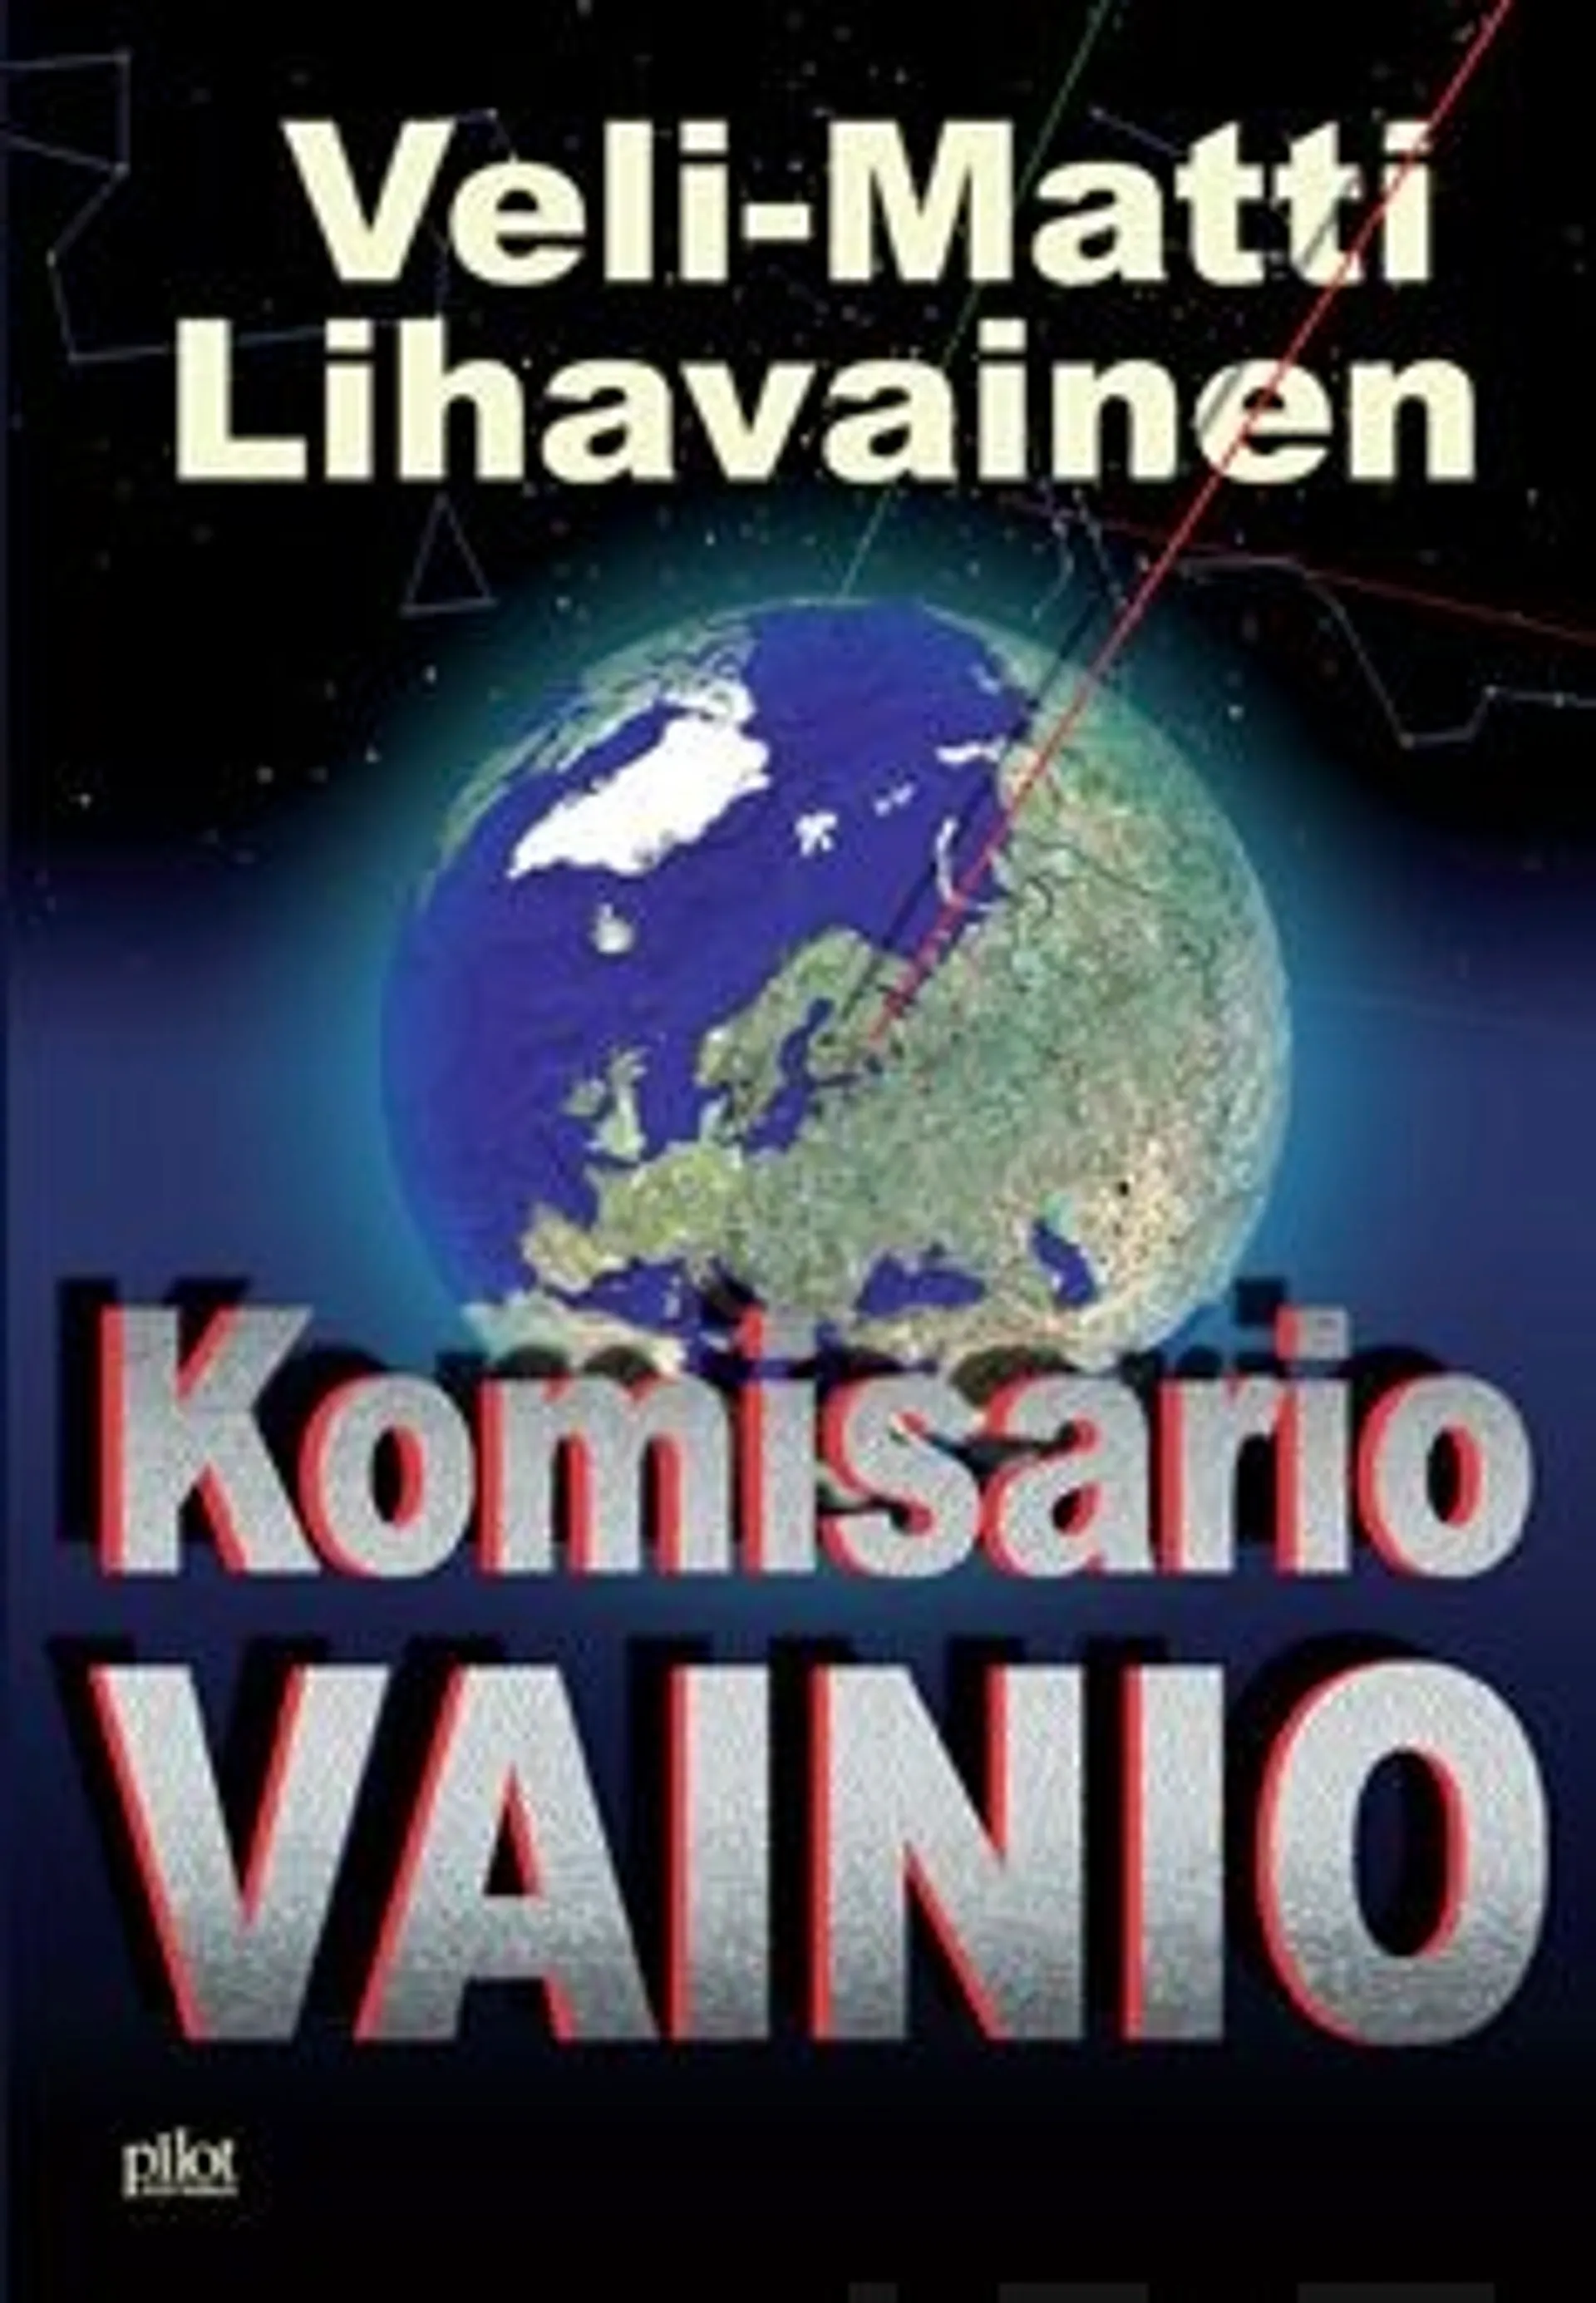 Lihavainen, Komisario Vainio